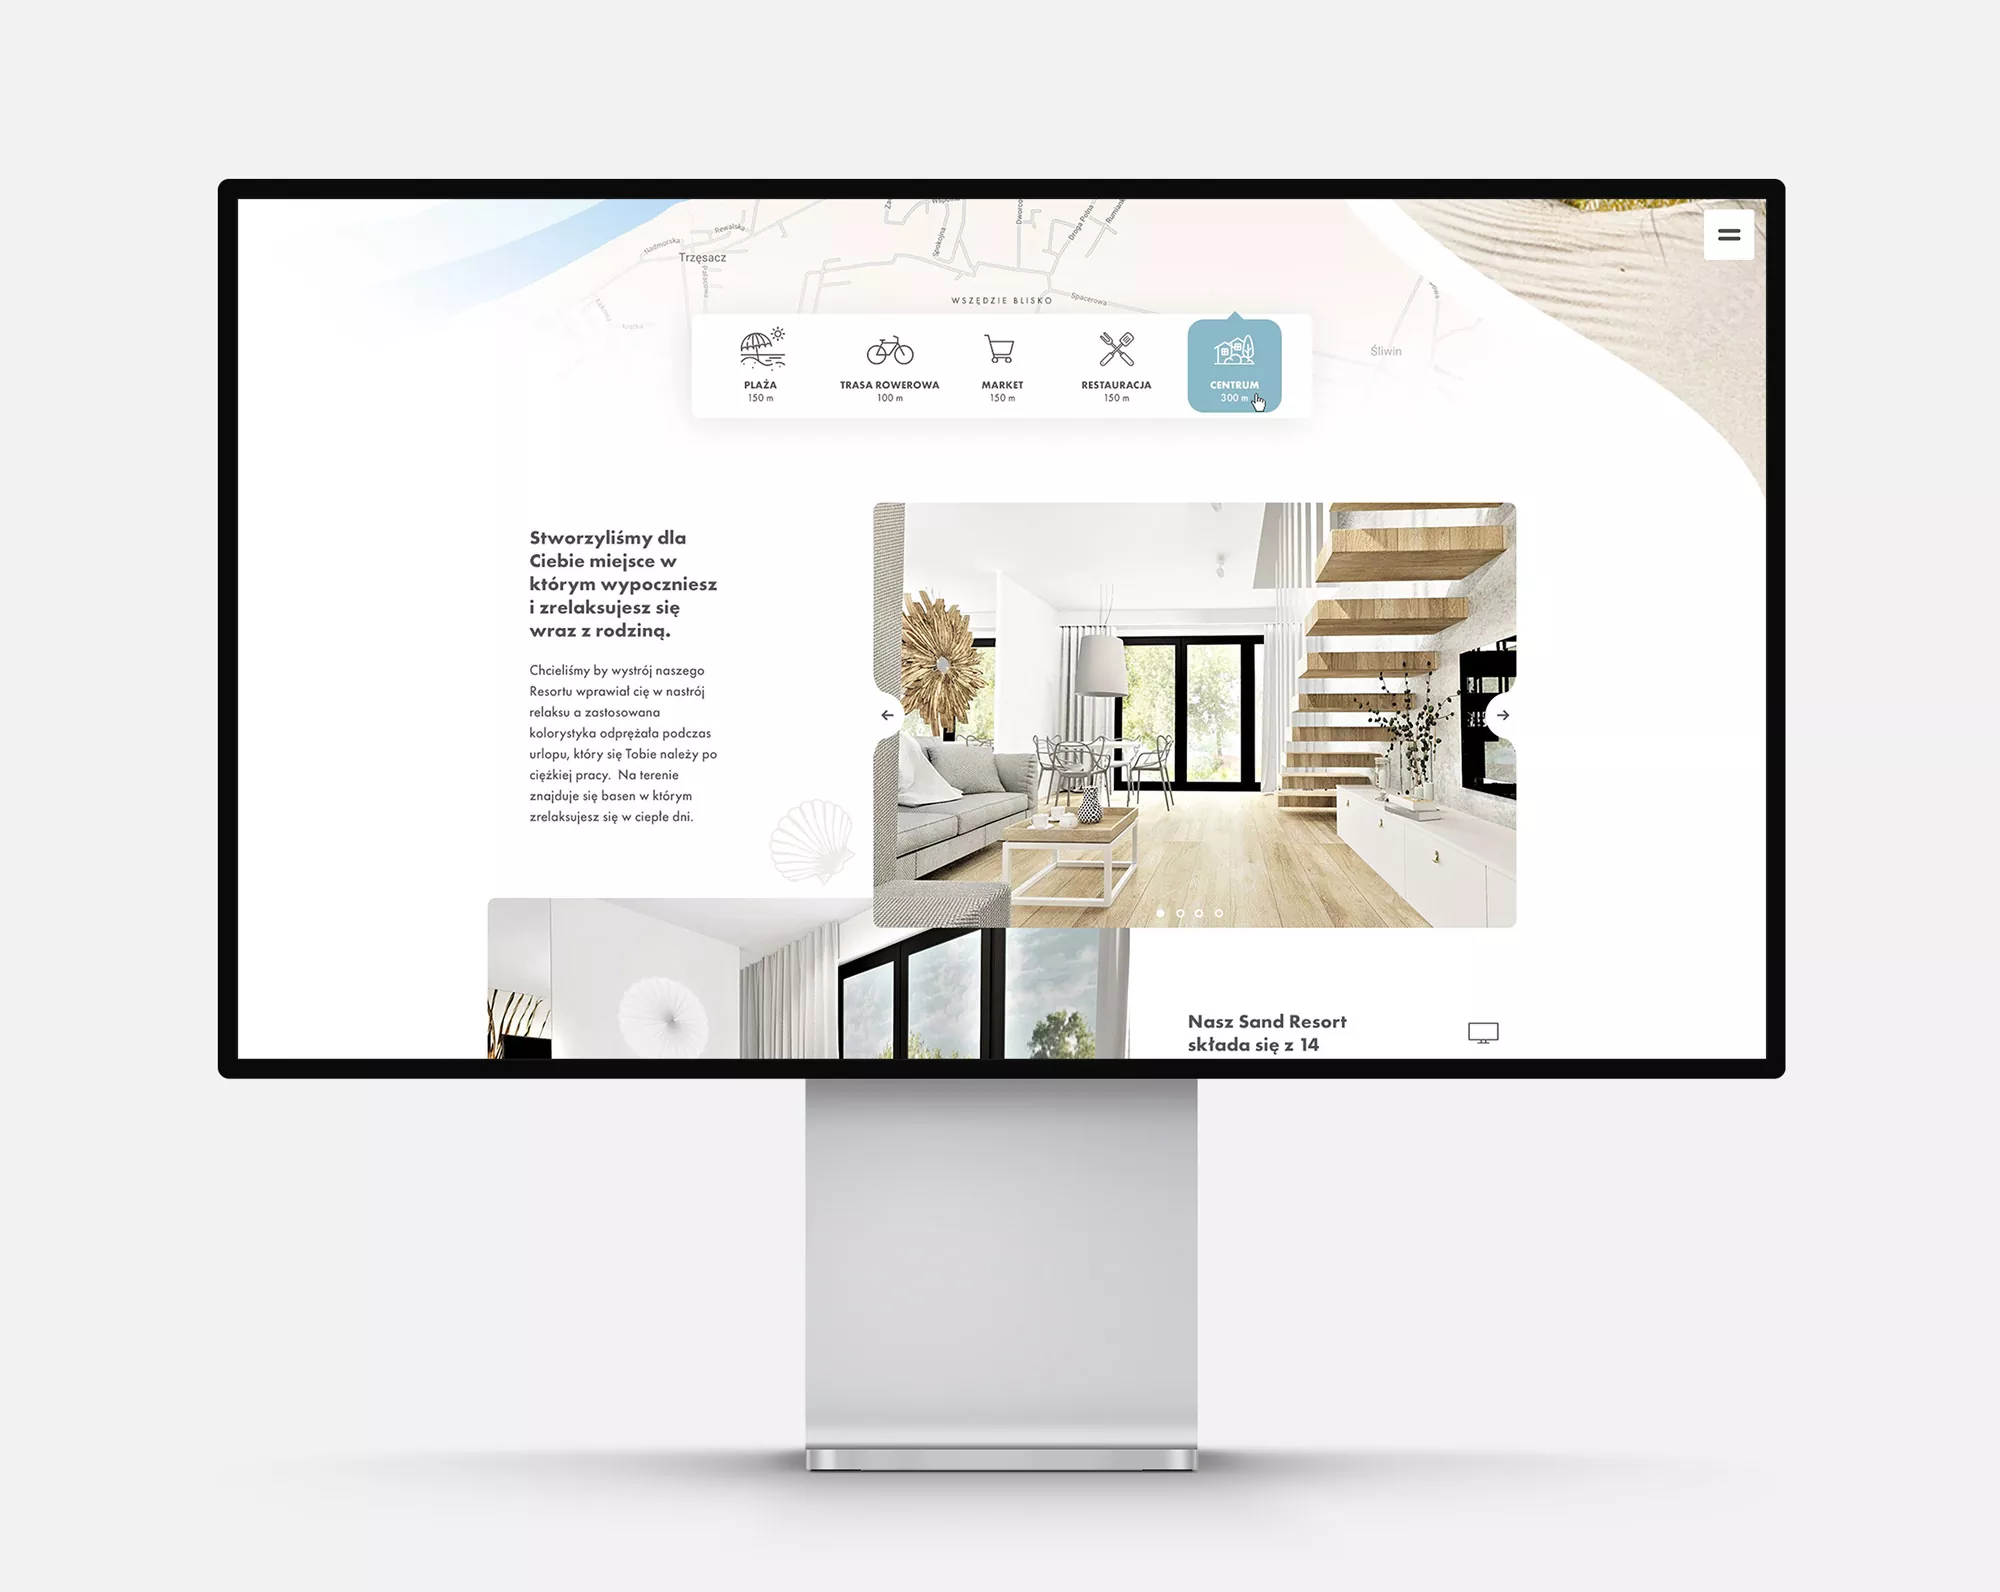 Sand Resort - strona internetowa, projekt dla apartamentów w Rewalu nad Bałtykiem widok na desktopie